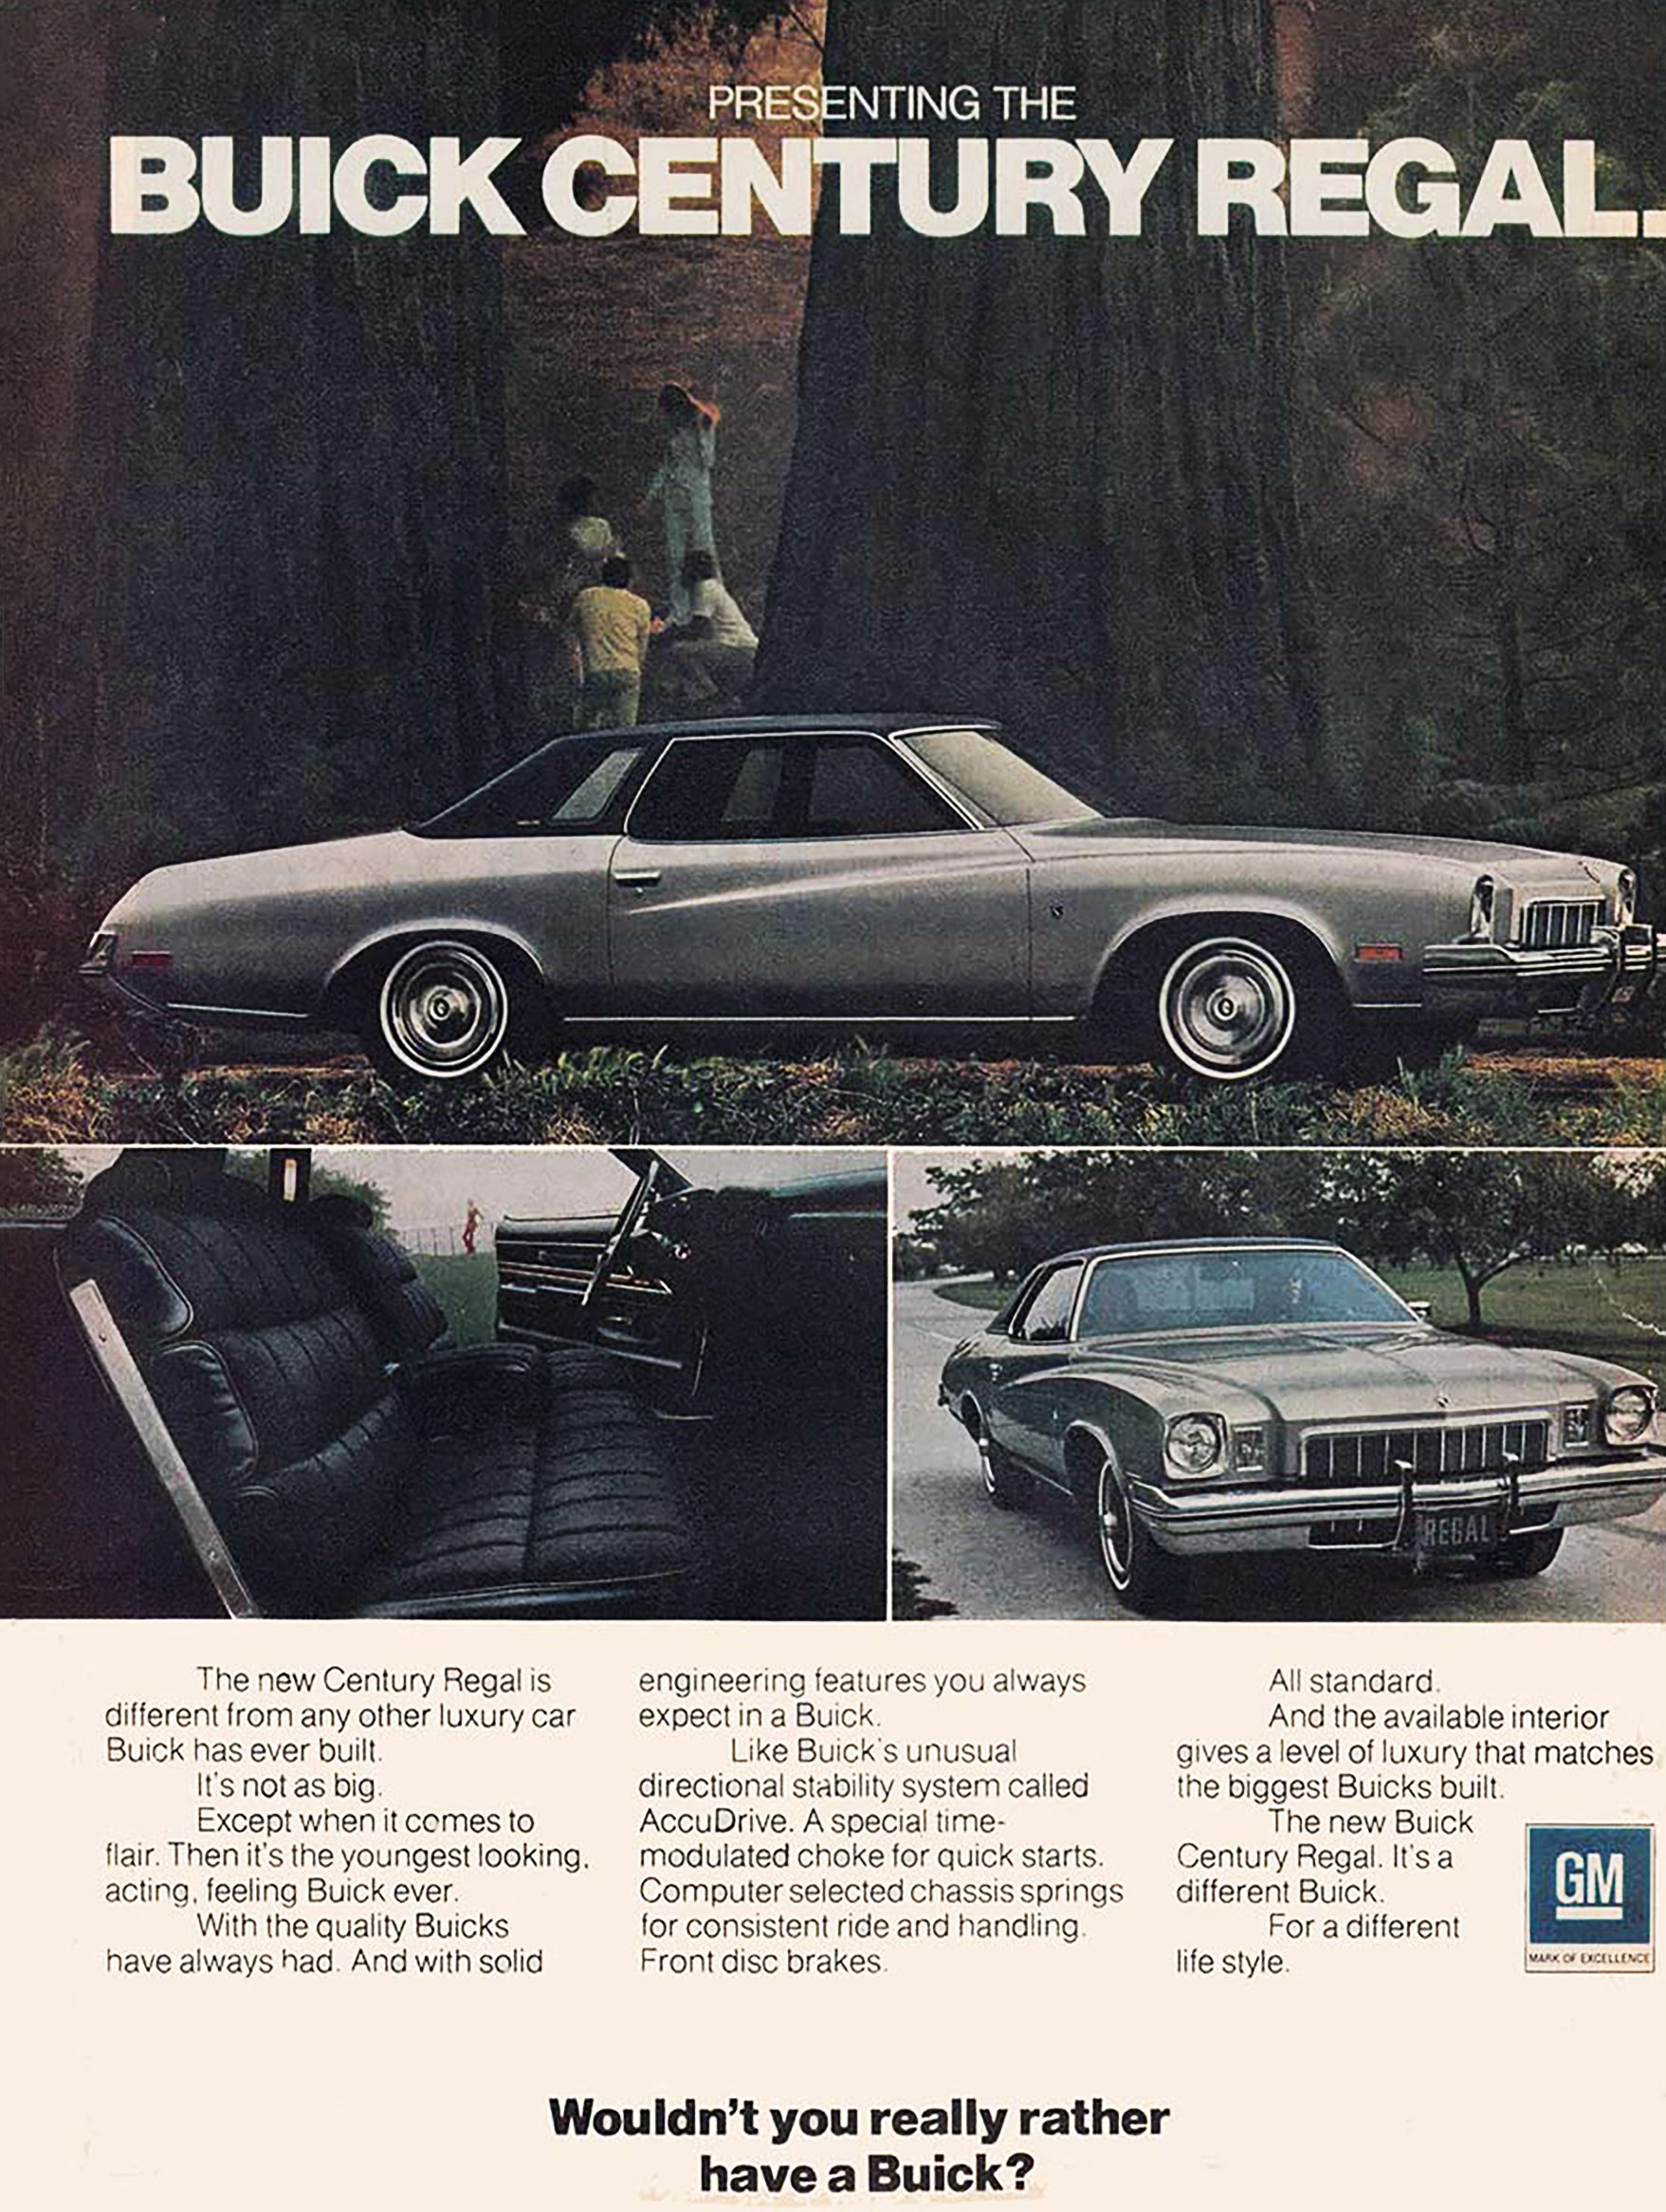  1973 Buick Century Regal 